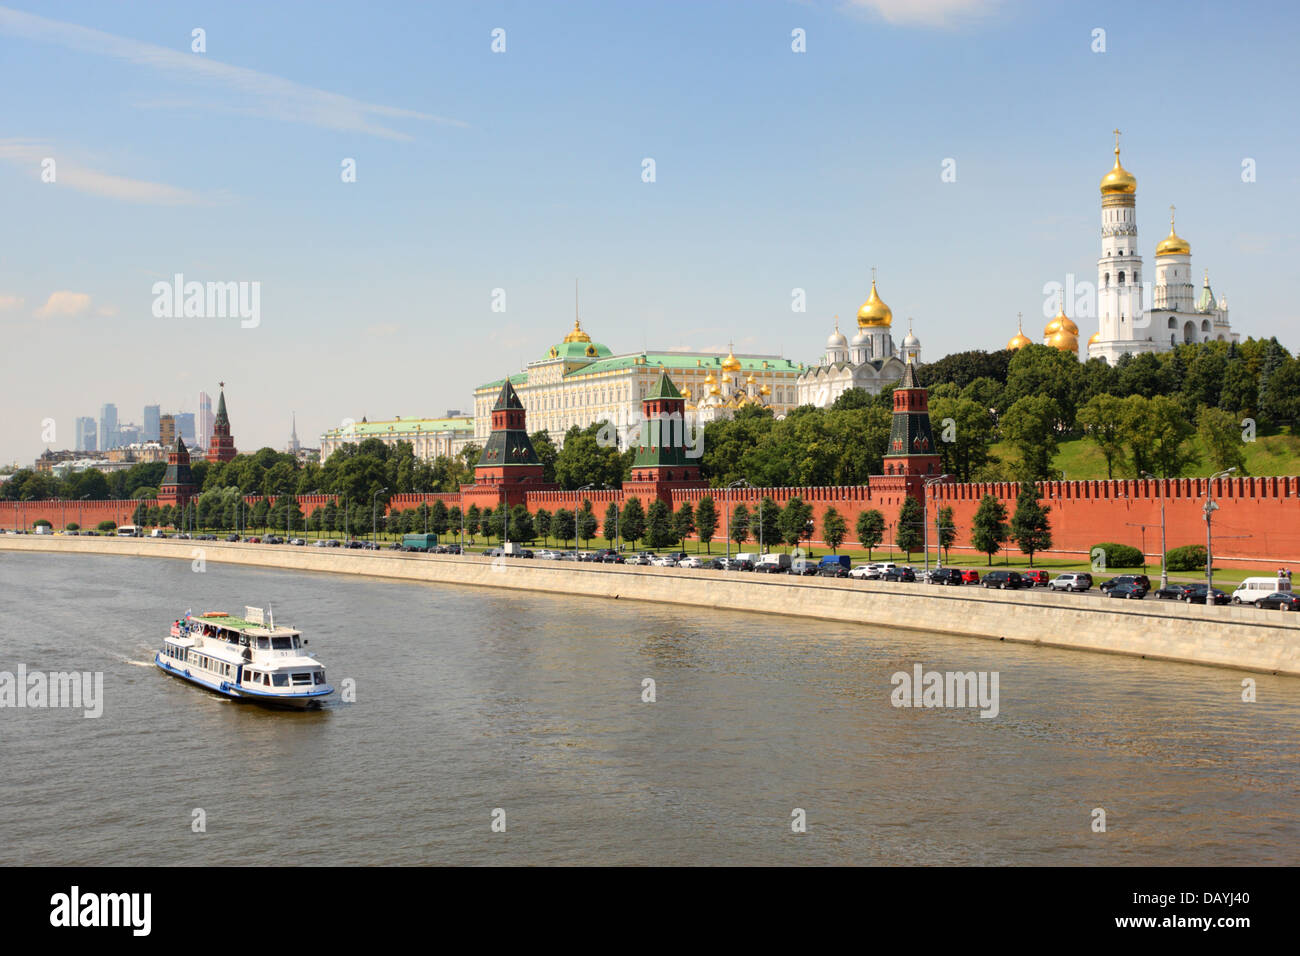 La ville de Moscou, Russie. Le Kremlin de Moscou et de rivière avec bateau sur la rivière de Moscou. Banque D'Images